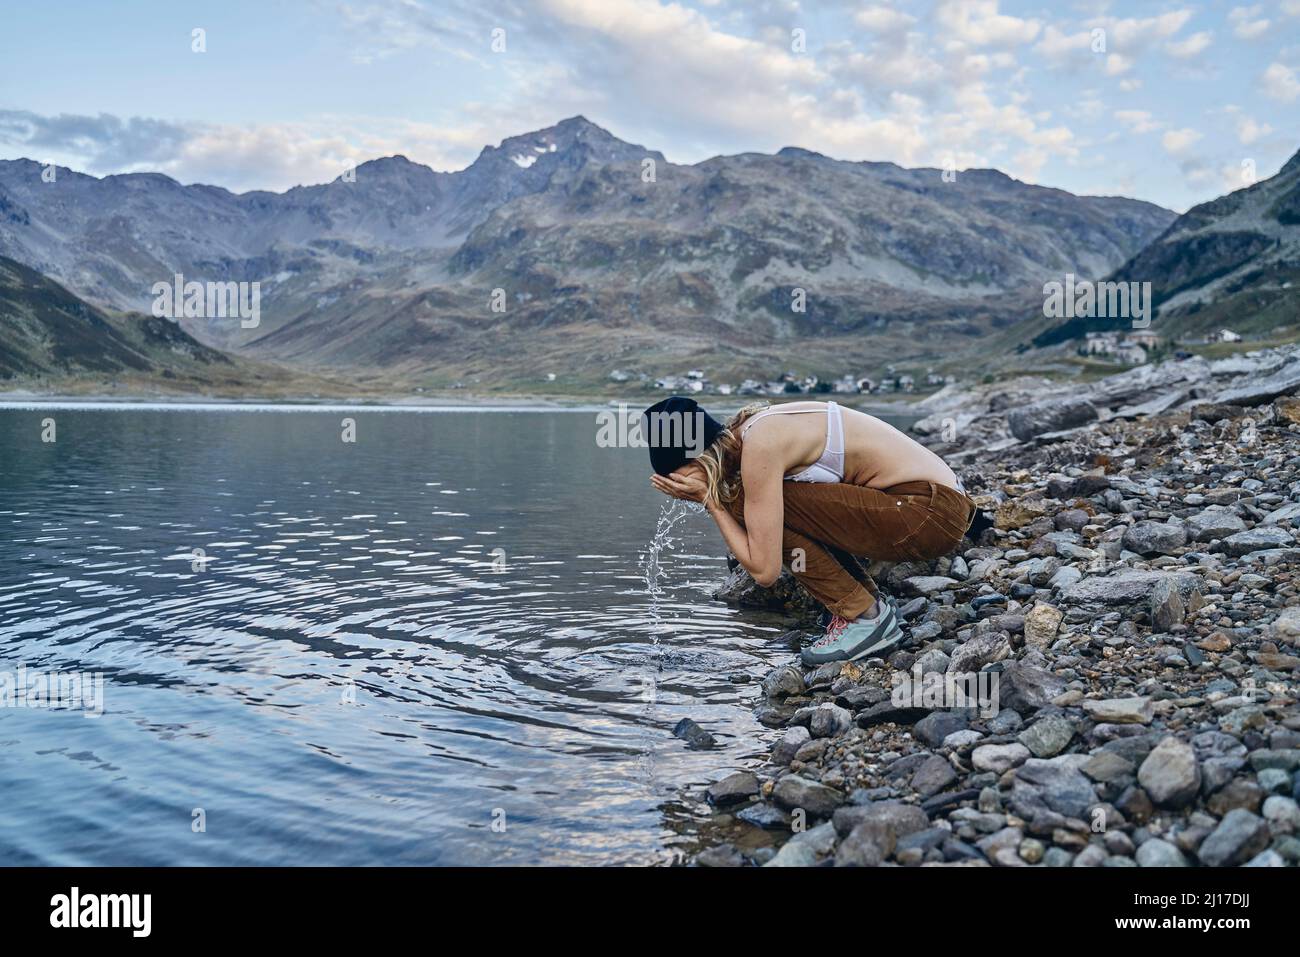 Frau, die am Seeufer, Splugen Pass, Sondrio, Italien, das Gesicht wascht Stockfoto